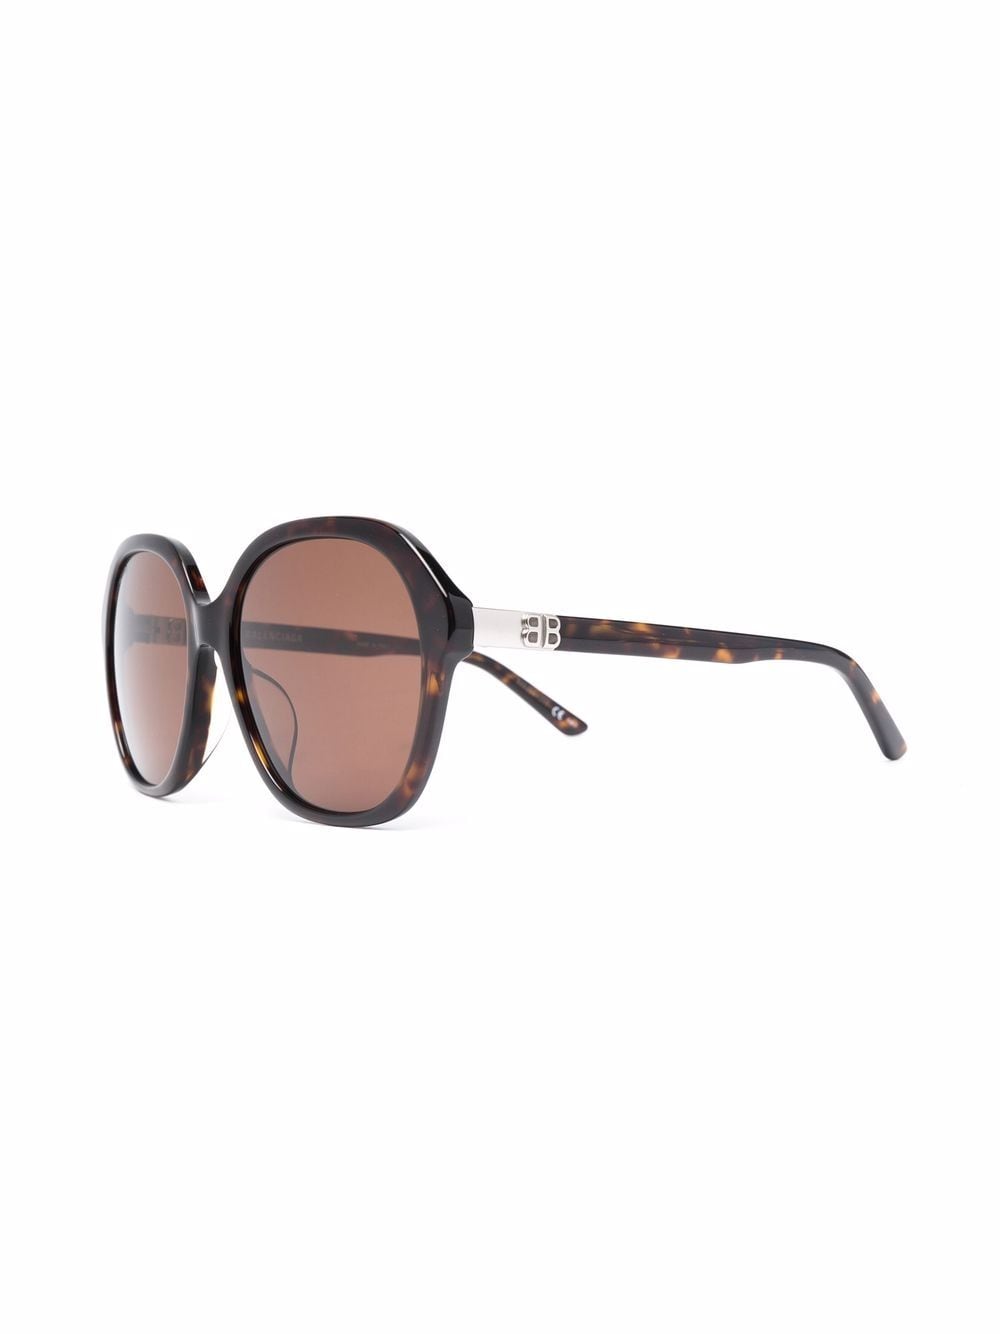 фото Balenciaga eyewear солнцезащитные очки черепаховой расцветки